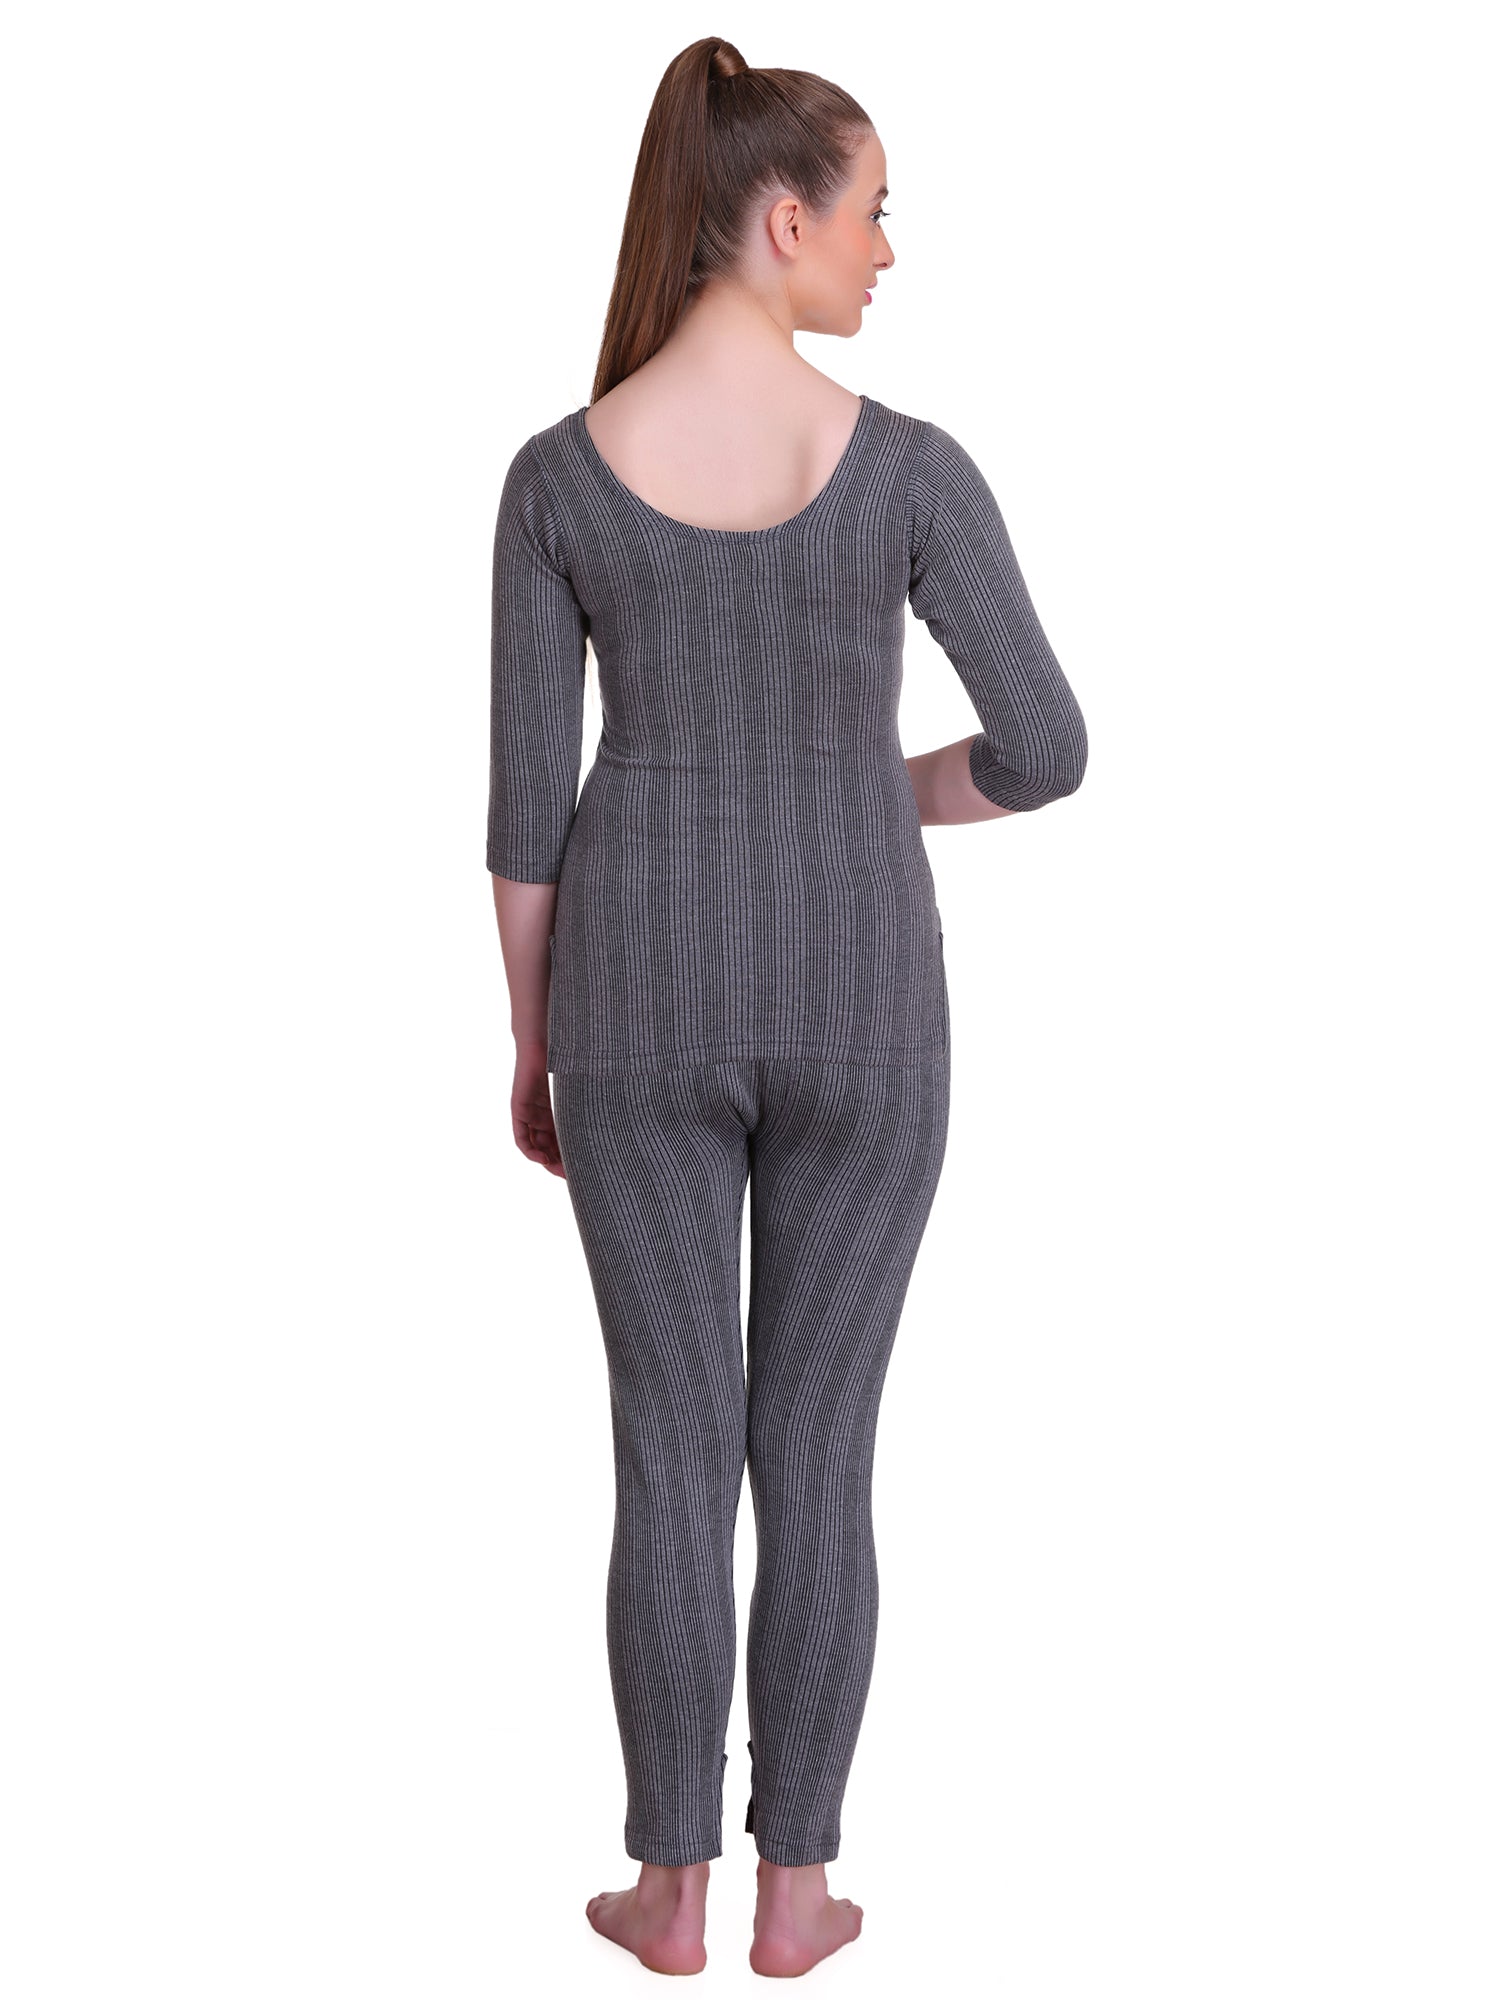 Buy Women Thermal 3 Tops & 2 Pajamas Combo Offer: TT Bazaar